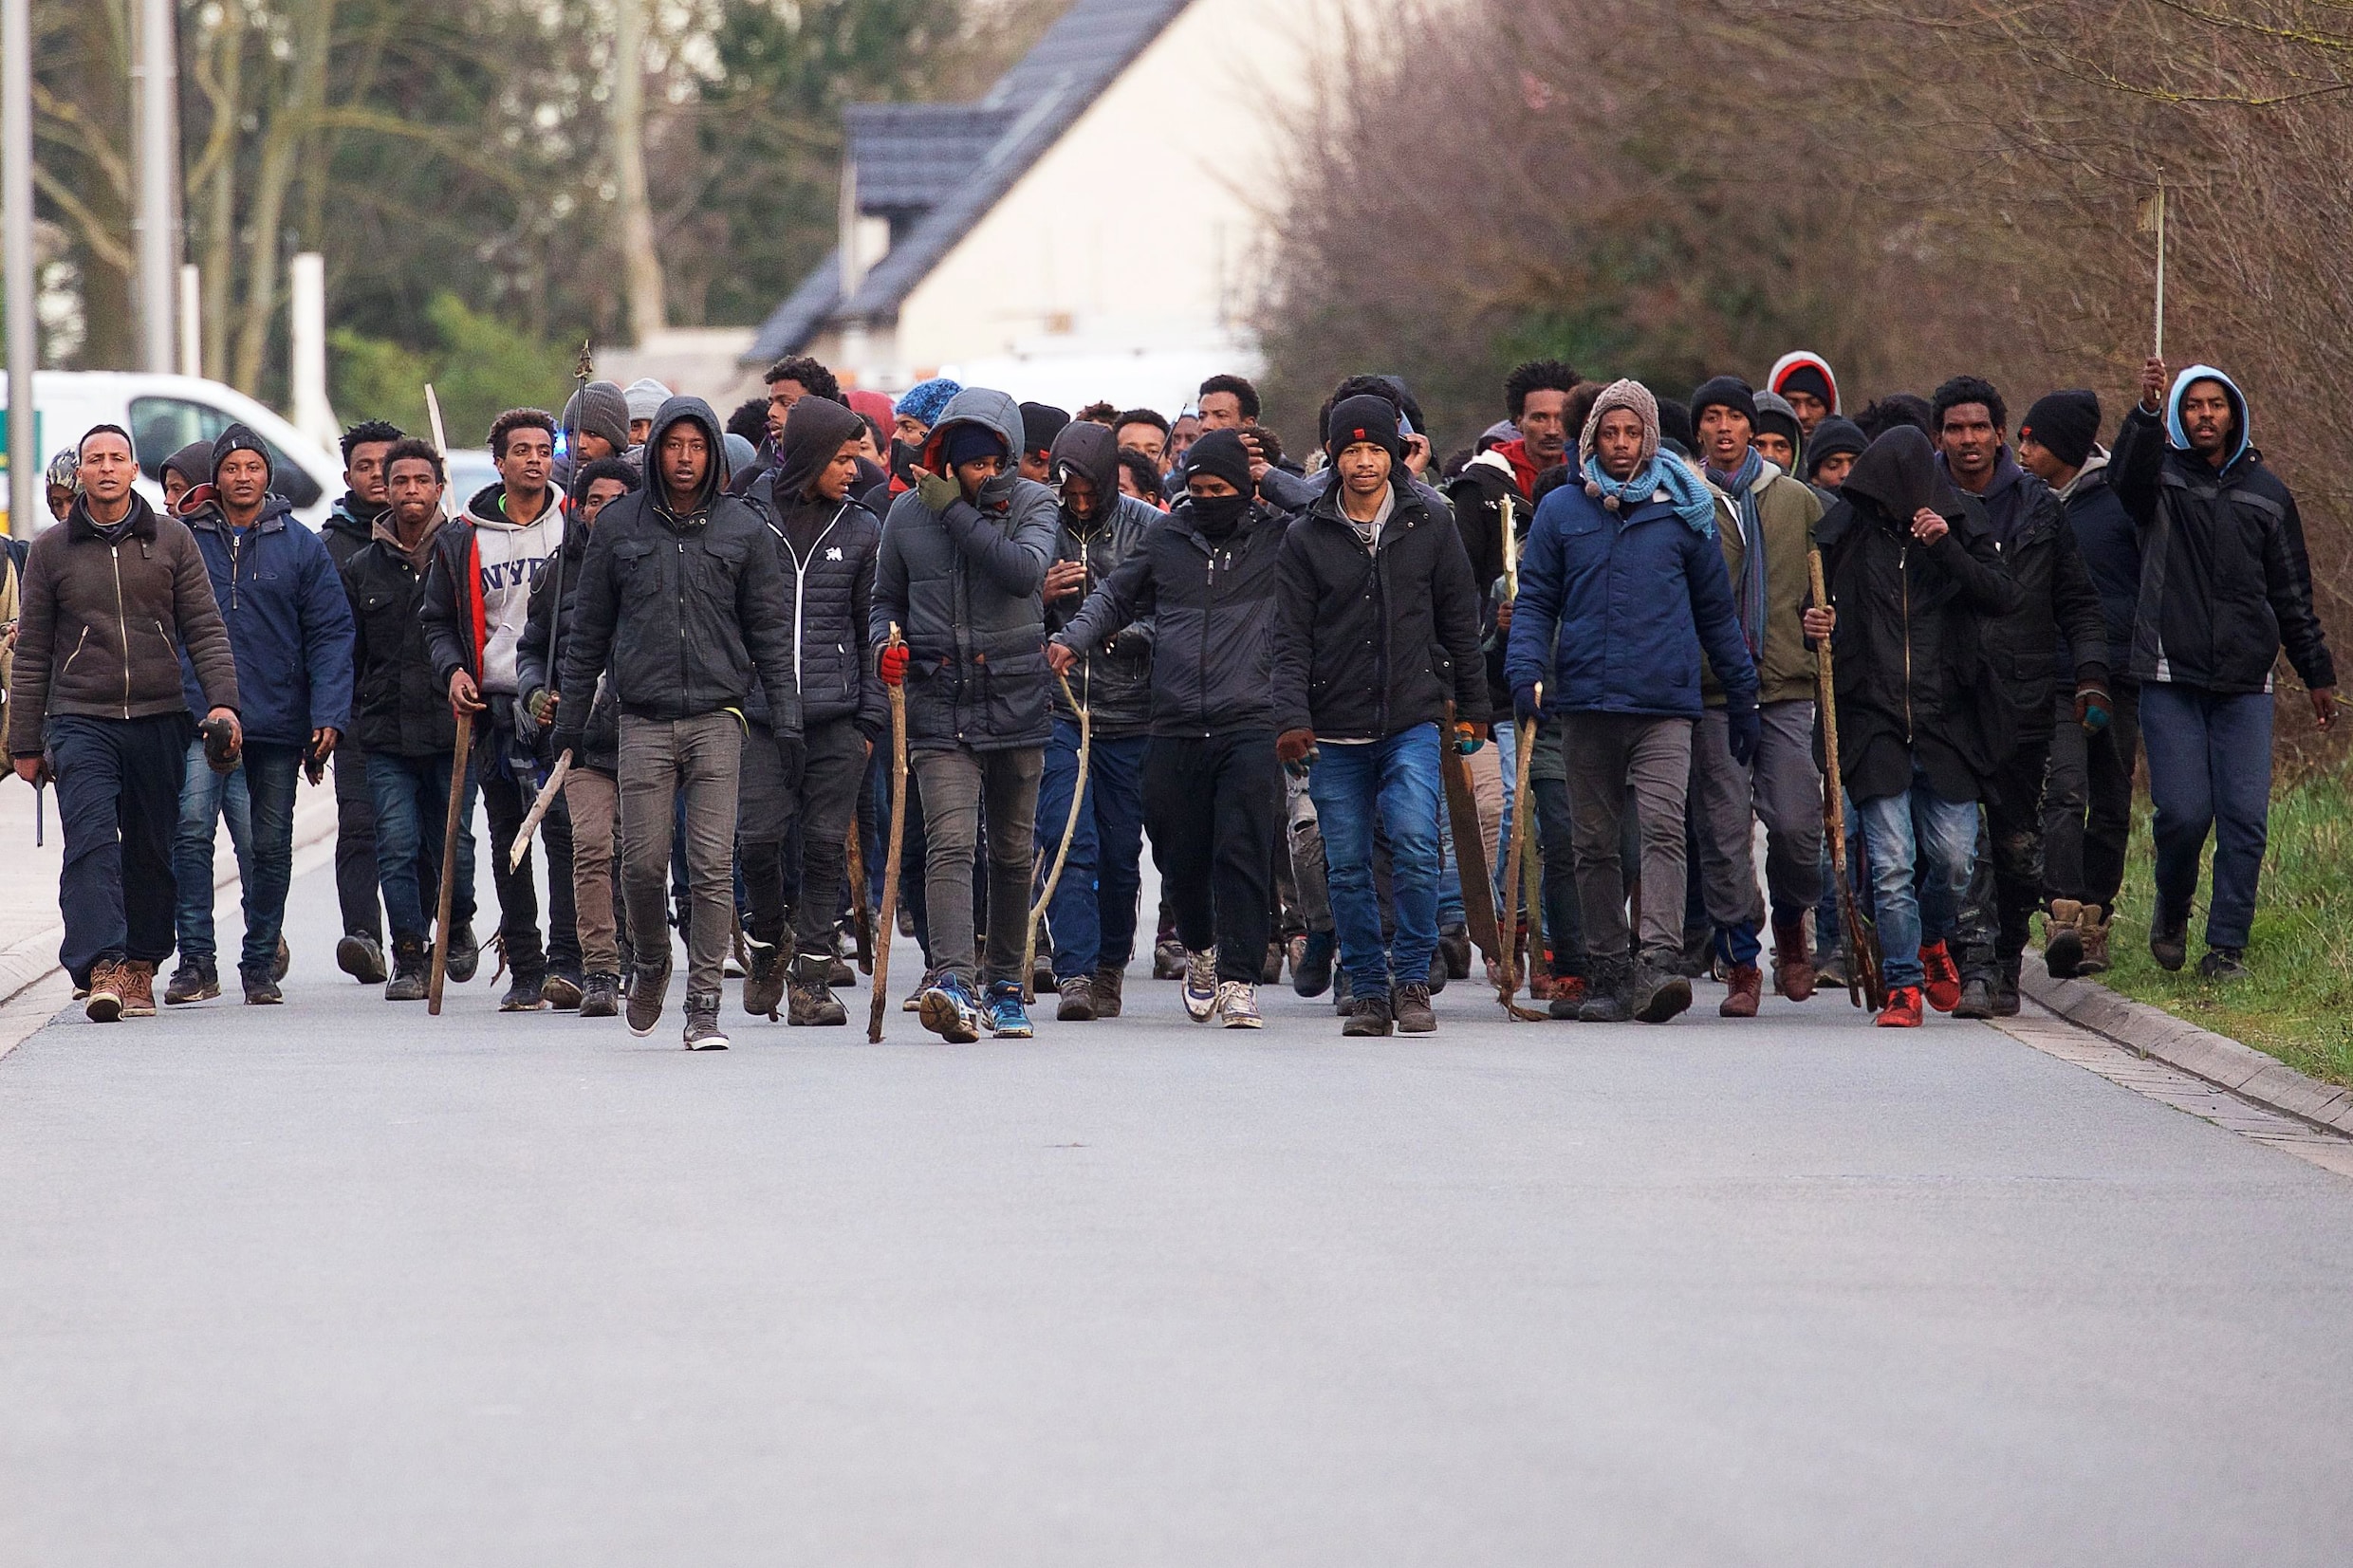 Vier migranten kritiek na vechtpartijen én schietpartij in Calais: "Zulk geweld hebben we hier nooit eerder gezien"